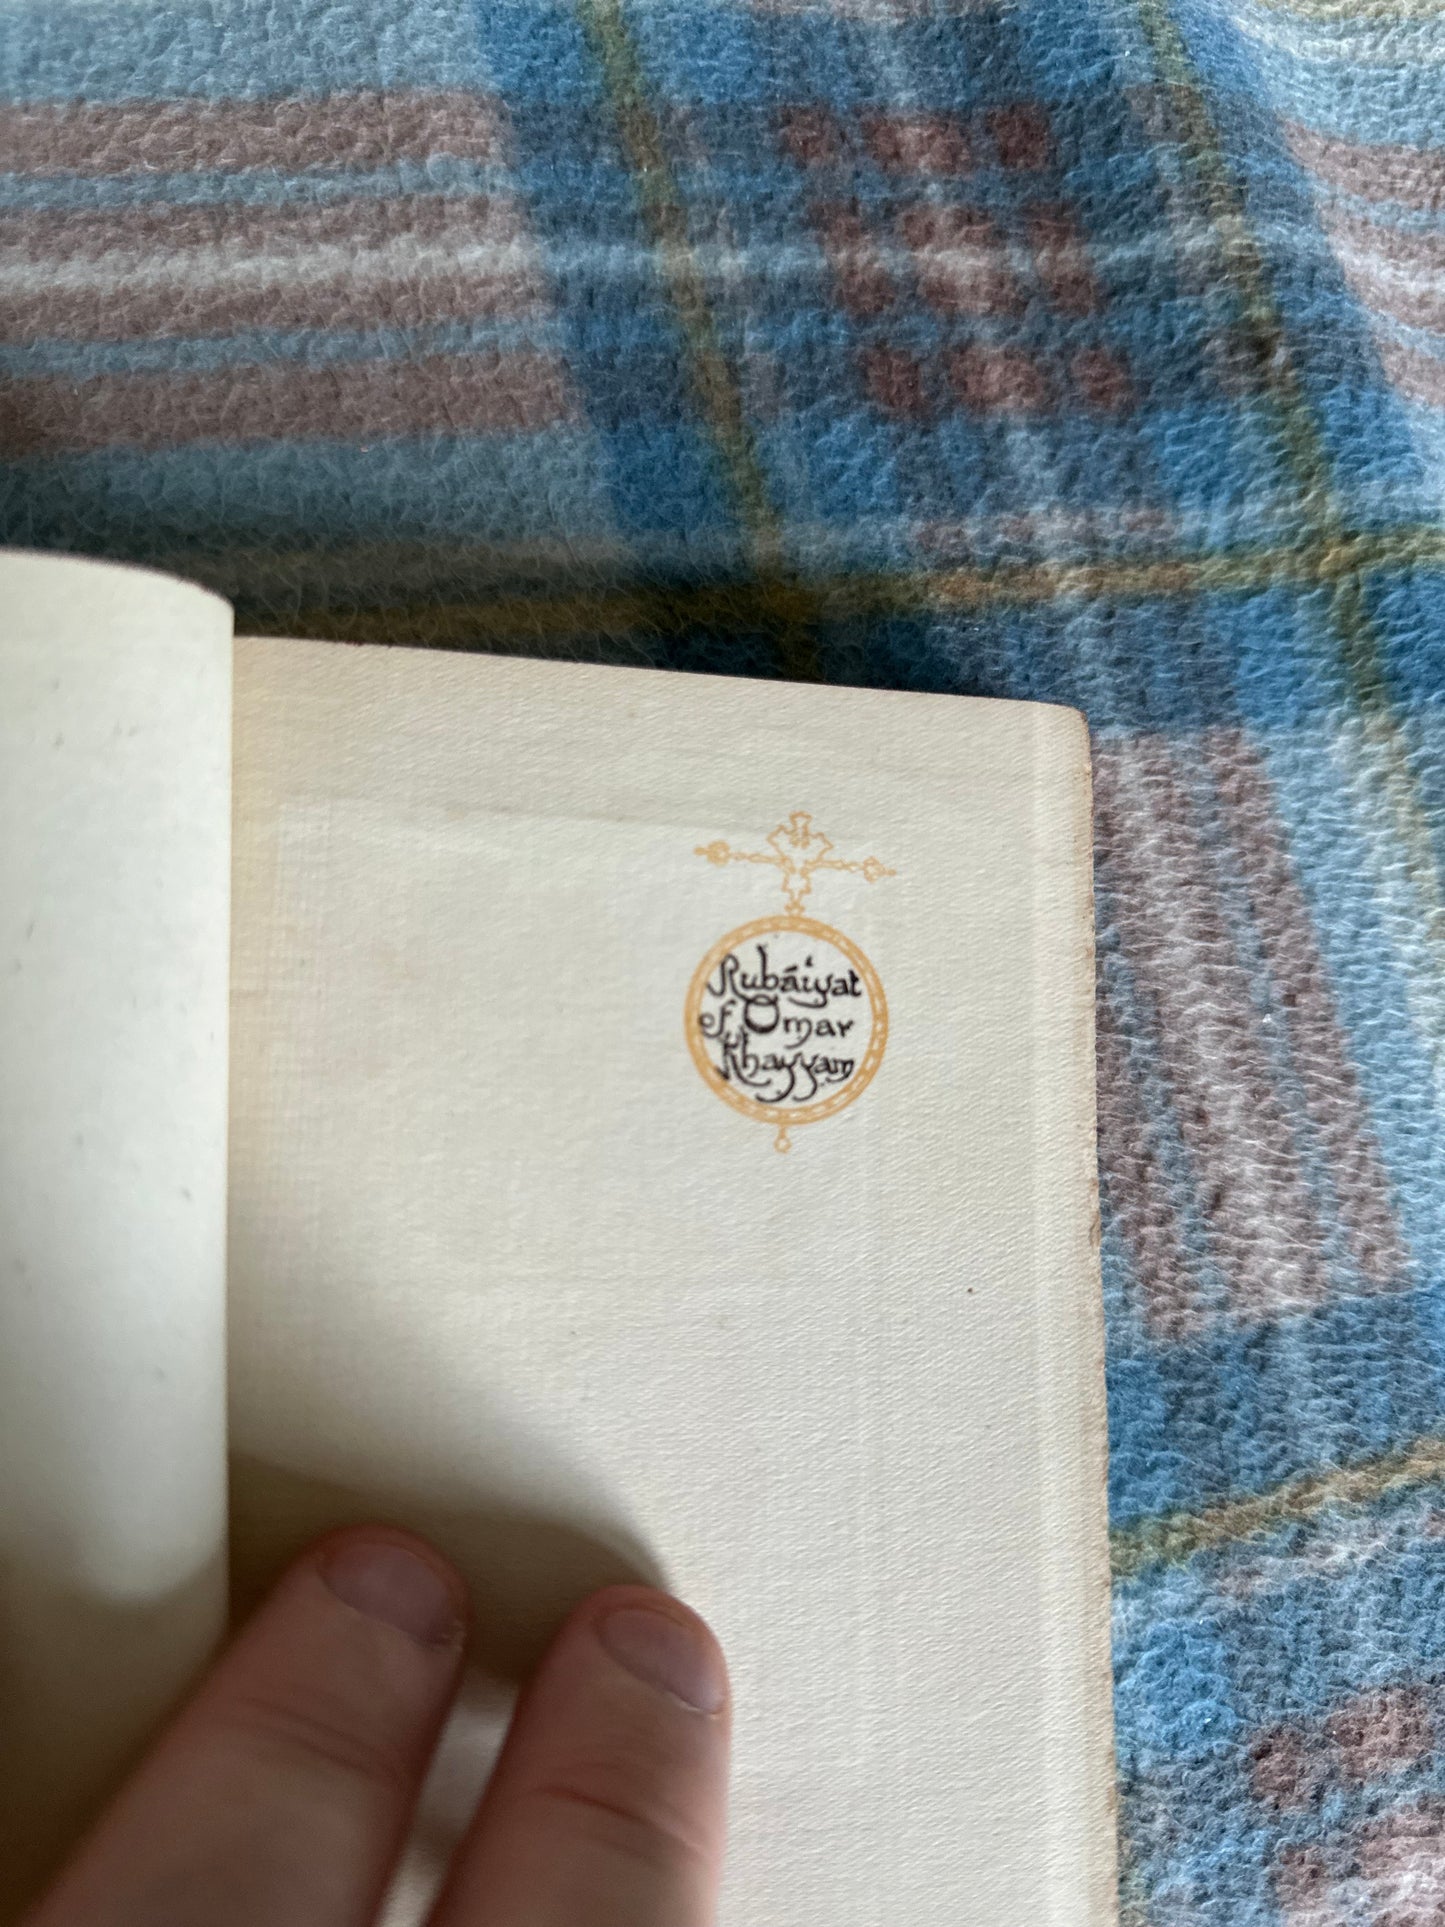 1944 Rubáiyát Of Omar Khayyám translated by Edward Fitzgerald (Illustrated by Willy Pogany) George G. Harrap Publisher